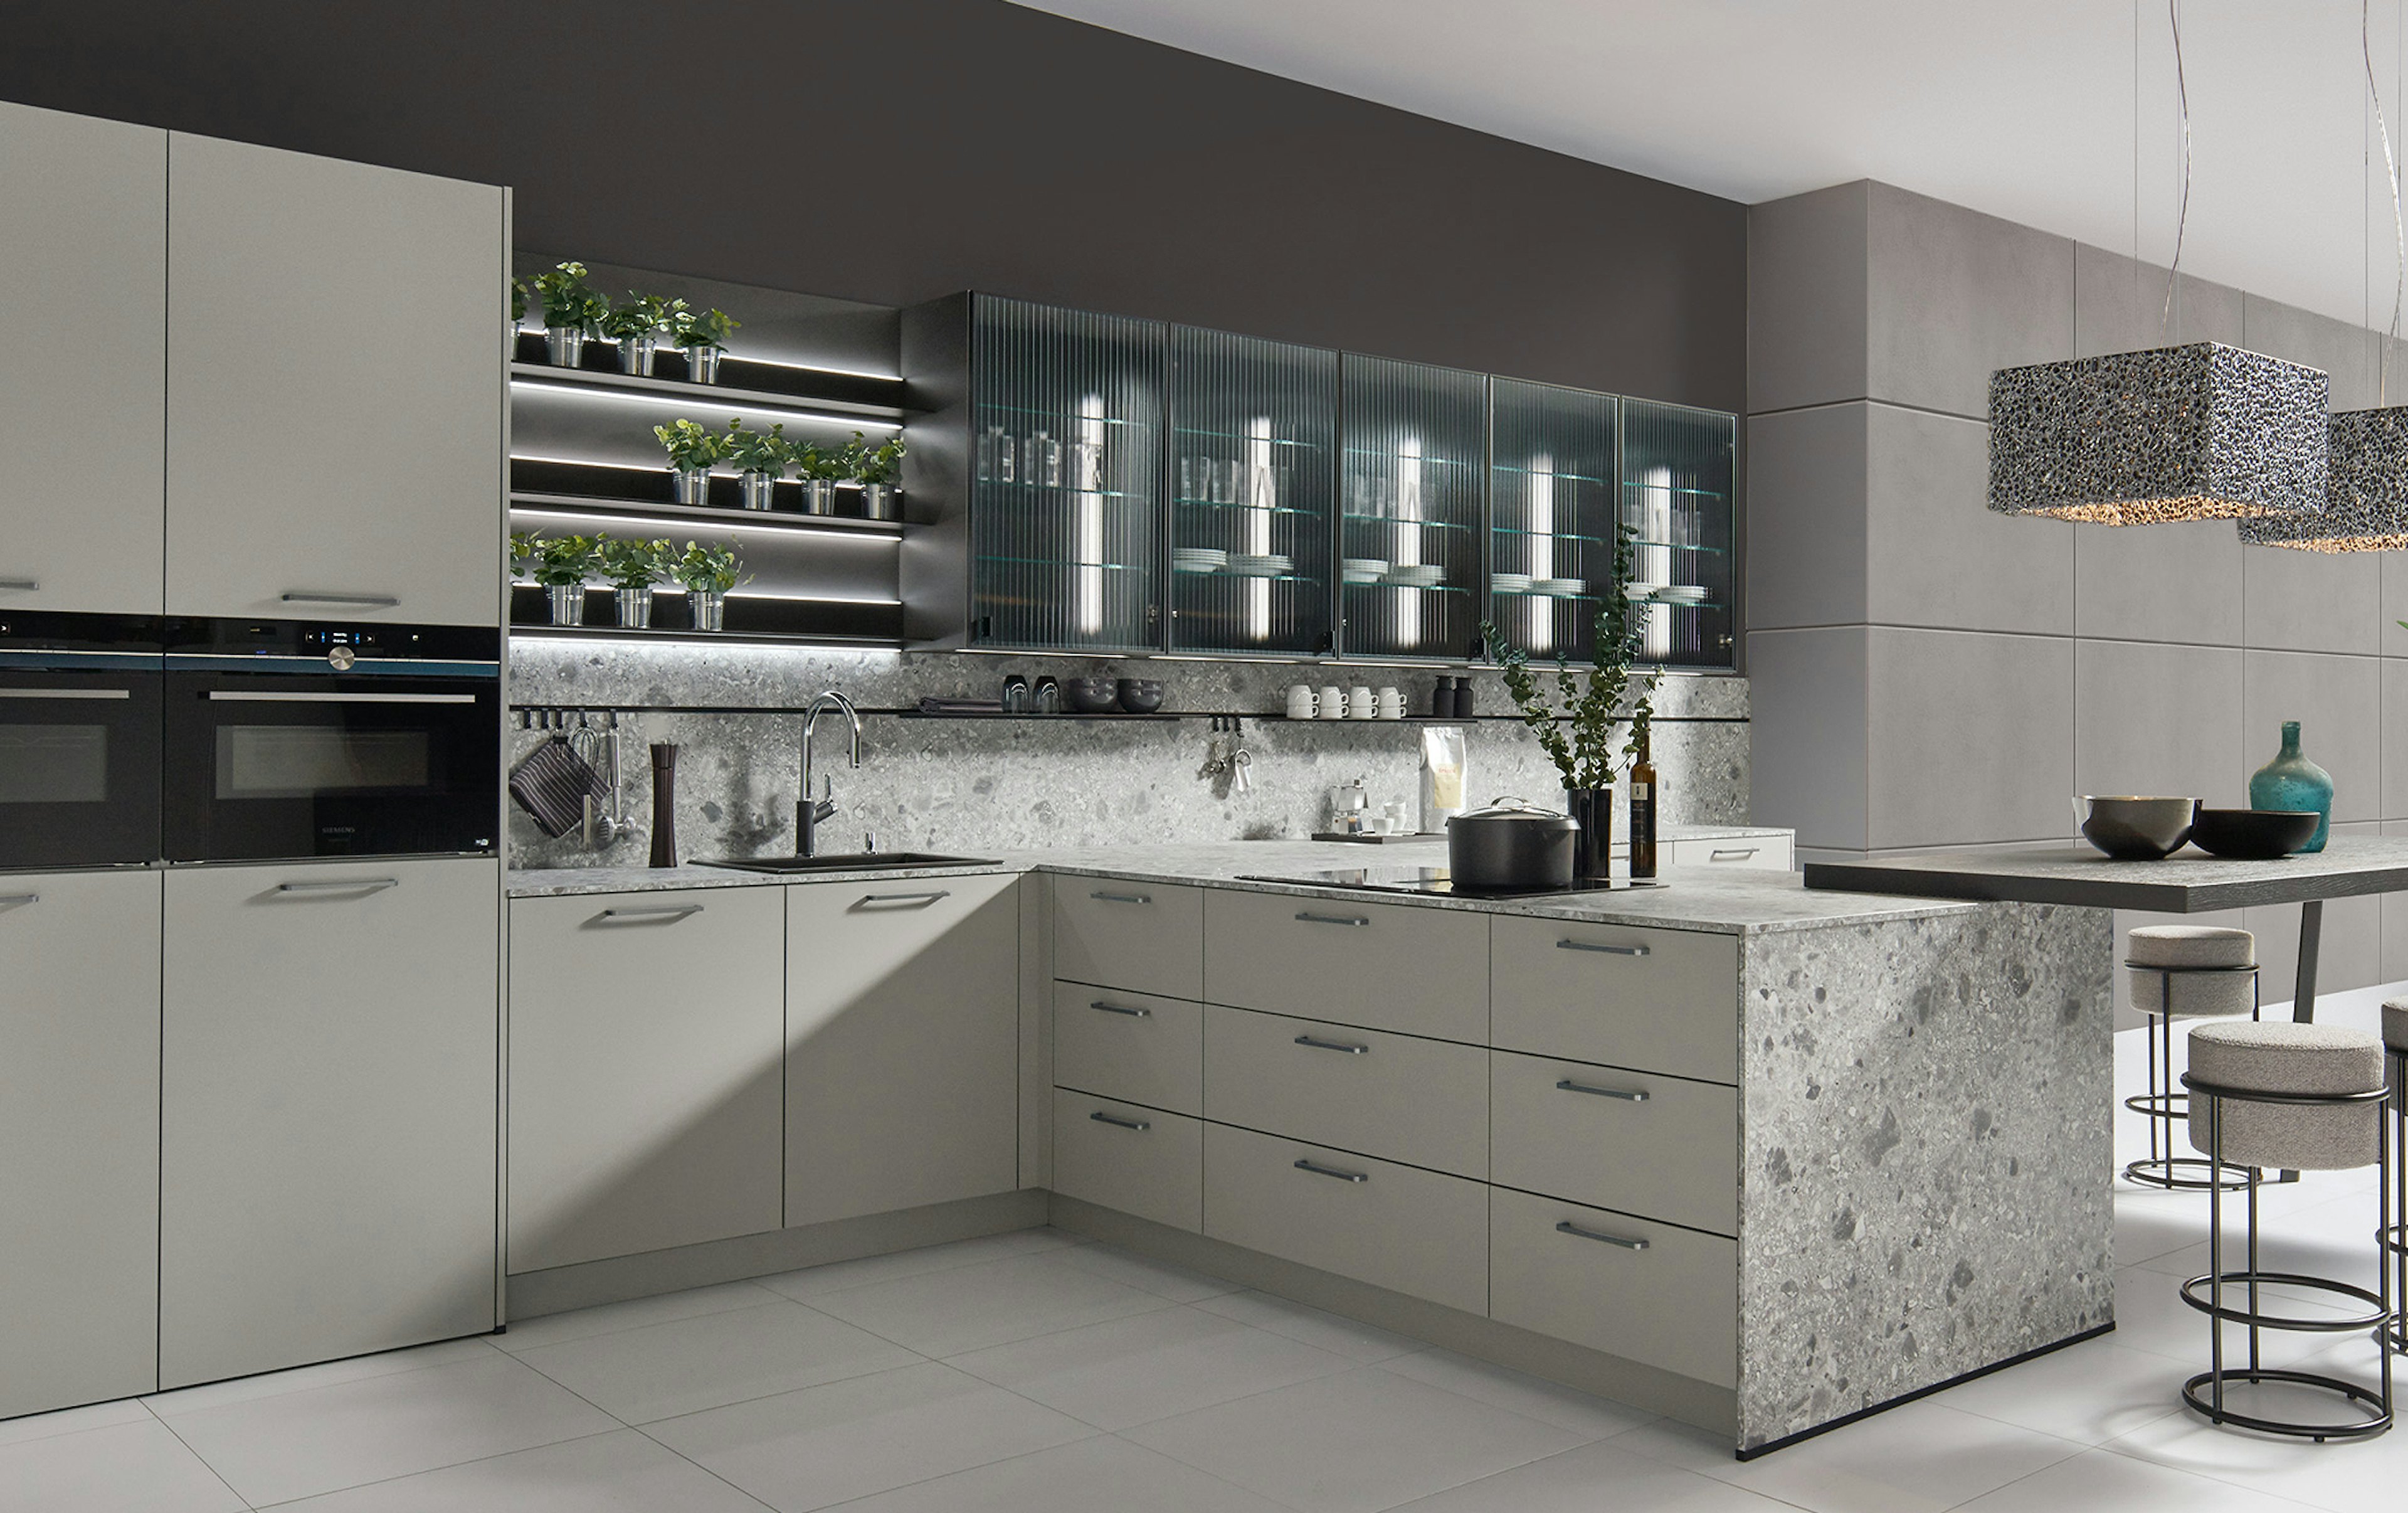 T-keuken in de kleur basalt grijs met glazen deurtjes.